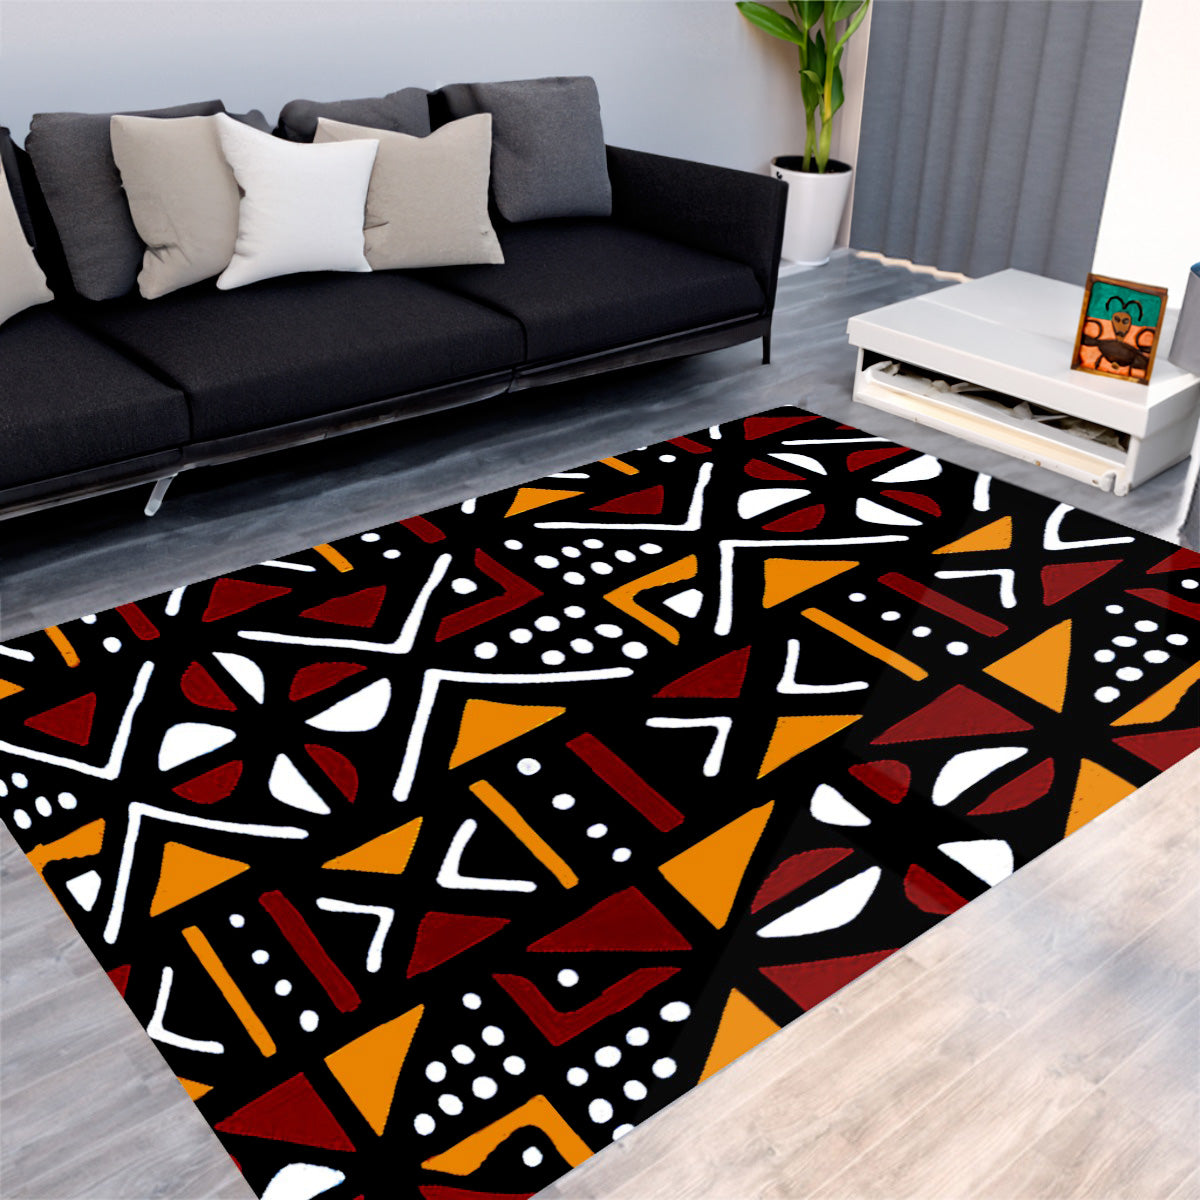 Afrocentric Mudcloth Print Carpet - Unique Rug Design